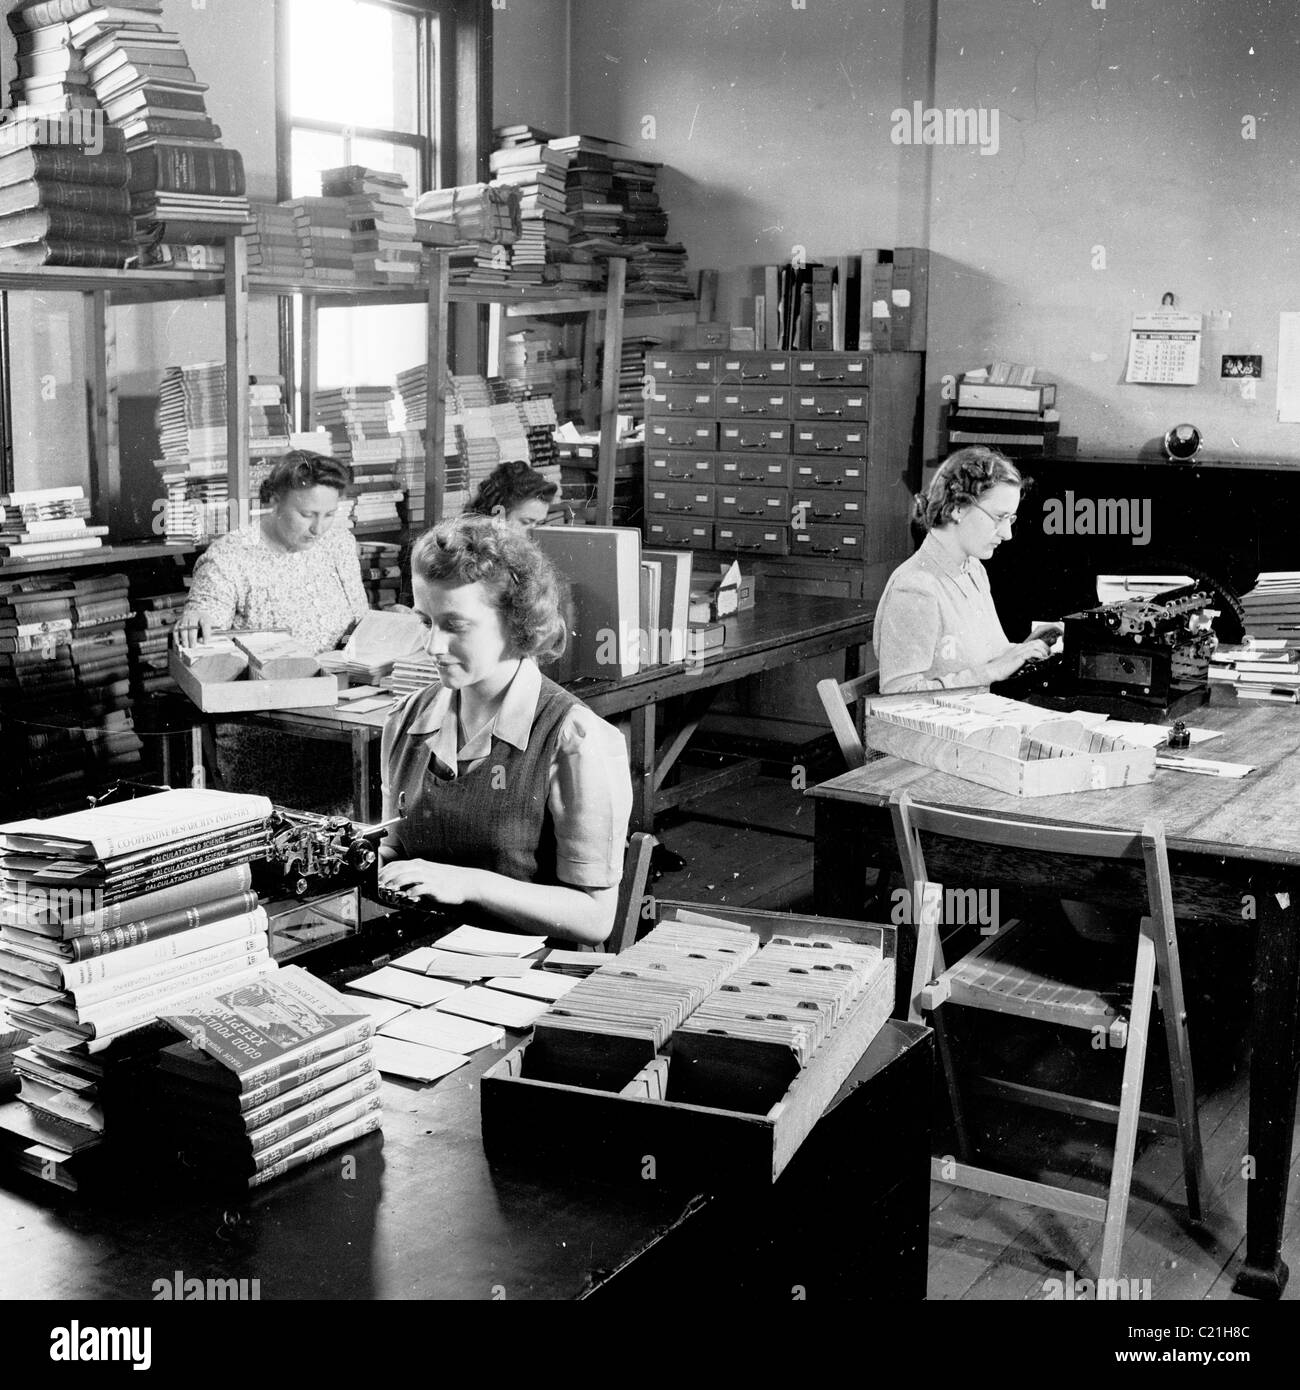 Degli anni Cinquanta, Inghilterra. Segretarie che lavorano presso le macchine da scrivere in un ufficio di una casa editrice in questo quadro storico da J Allan contanti. Foto Stock